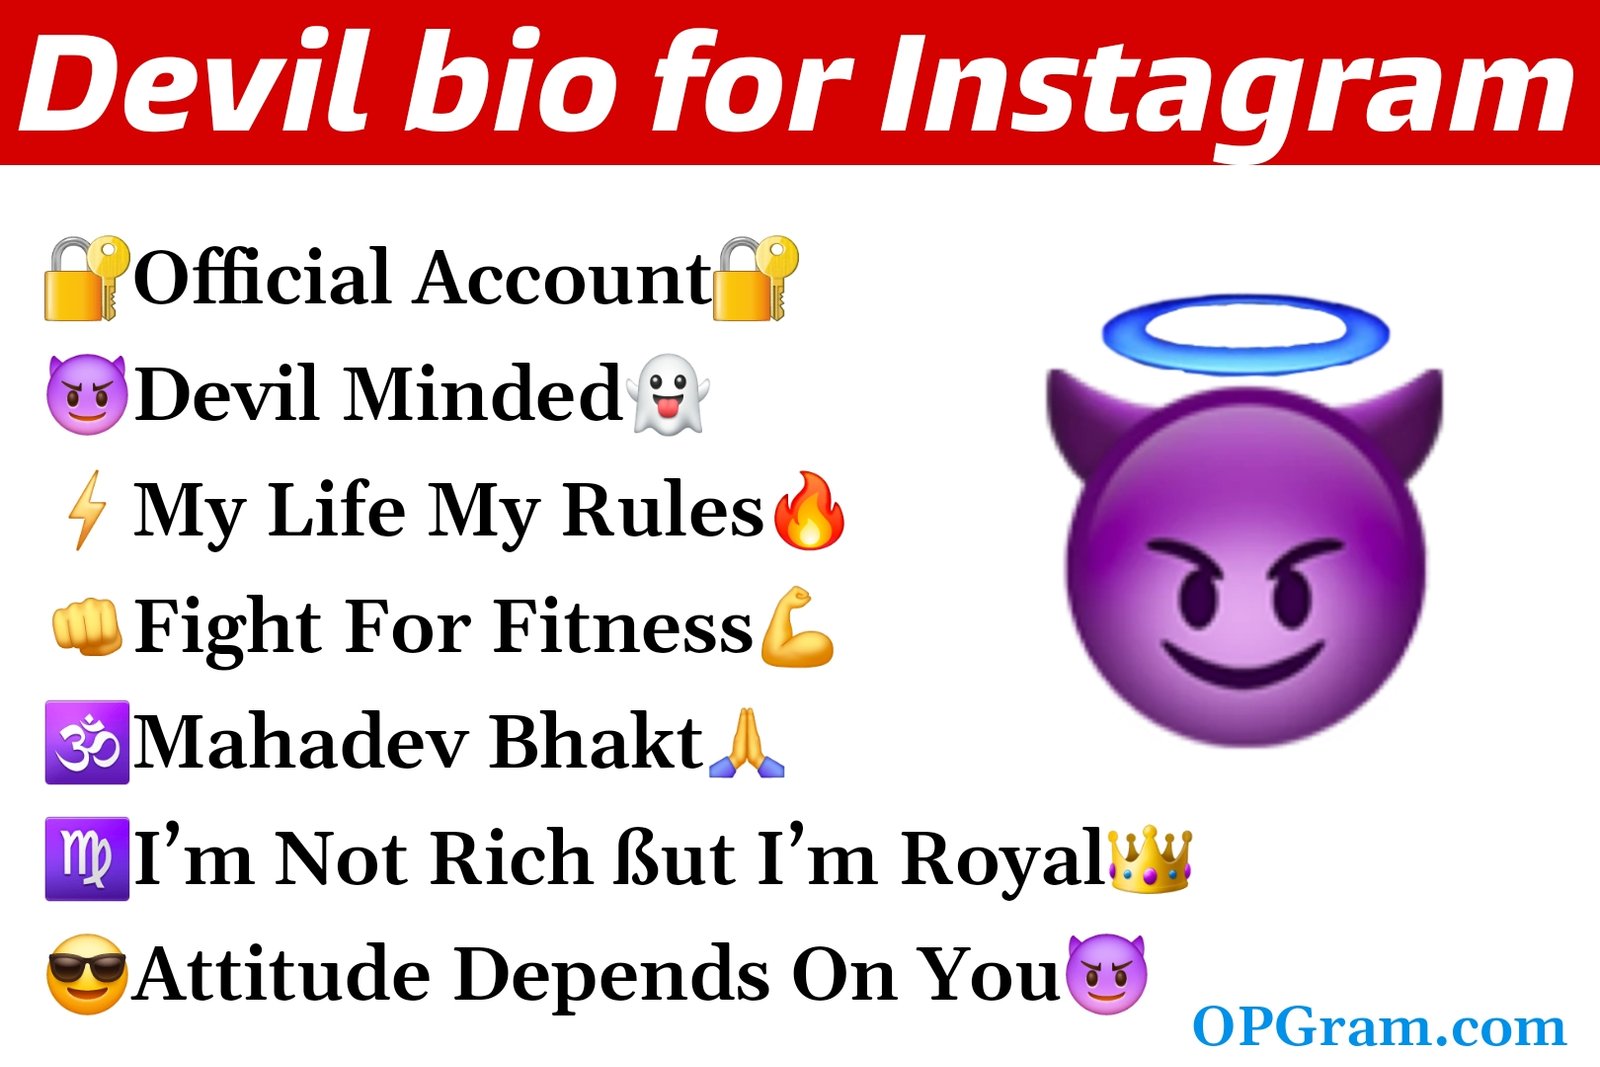 Devil bio for Instagram